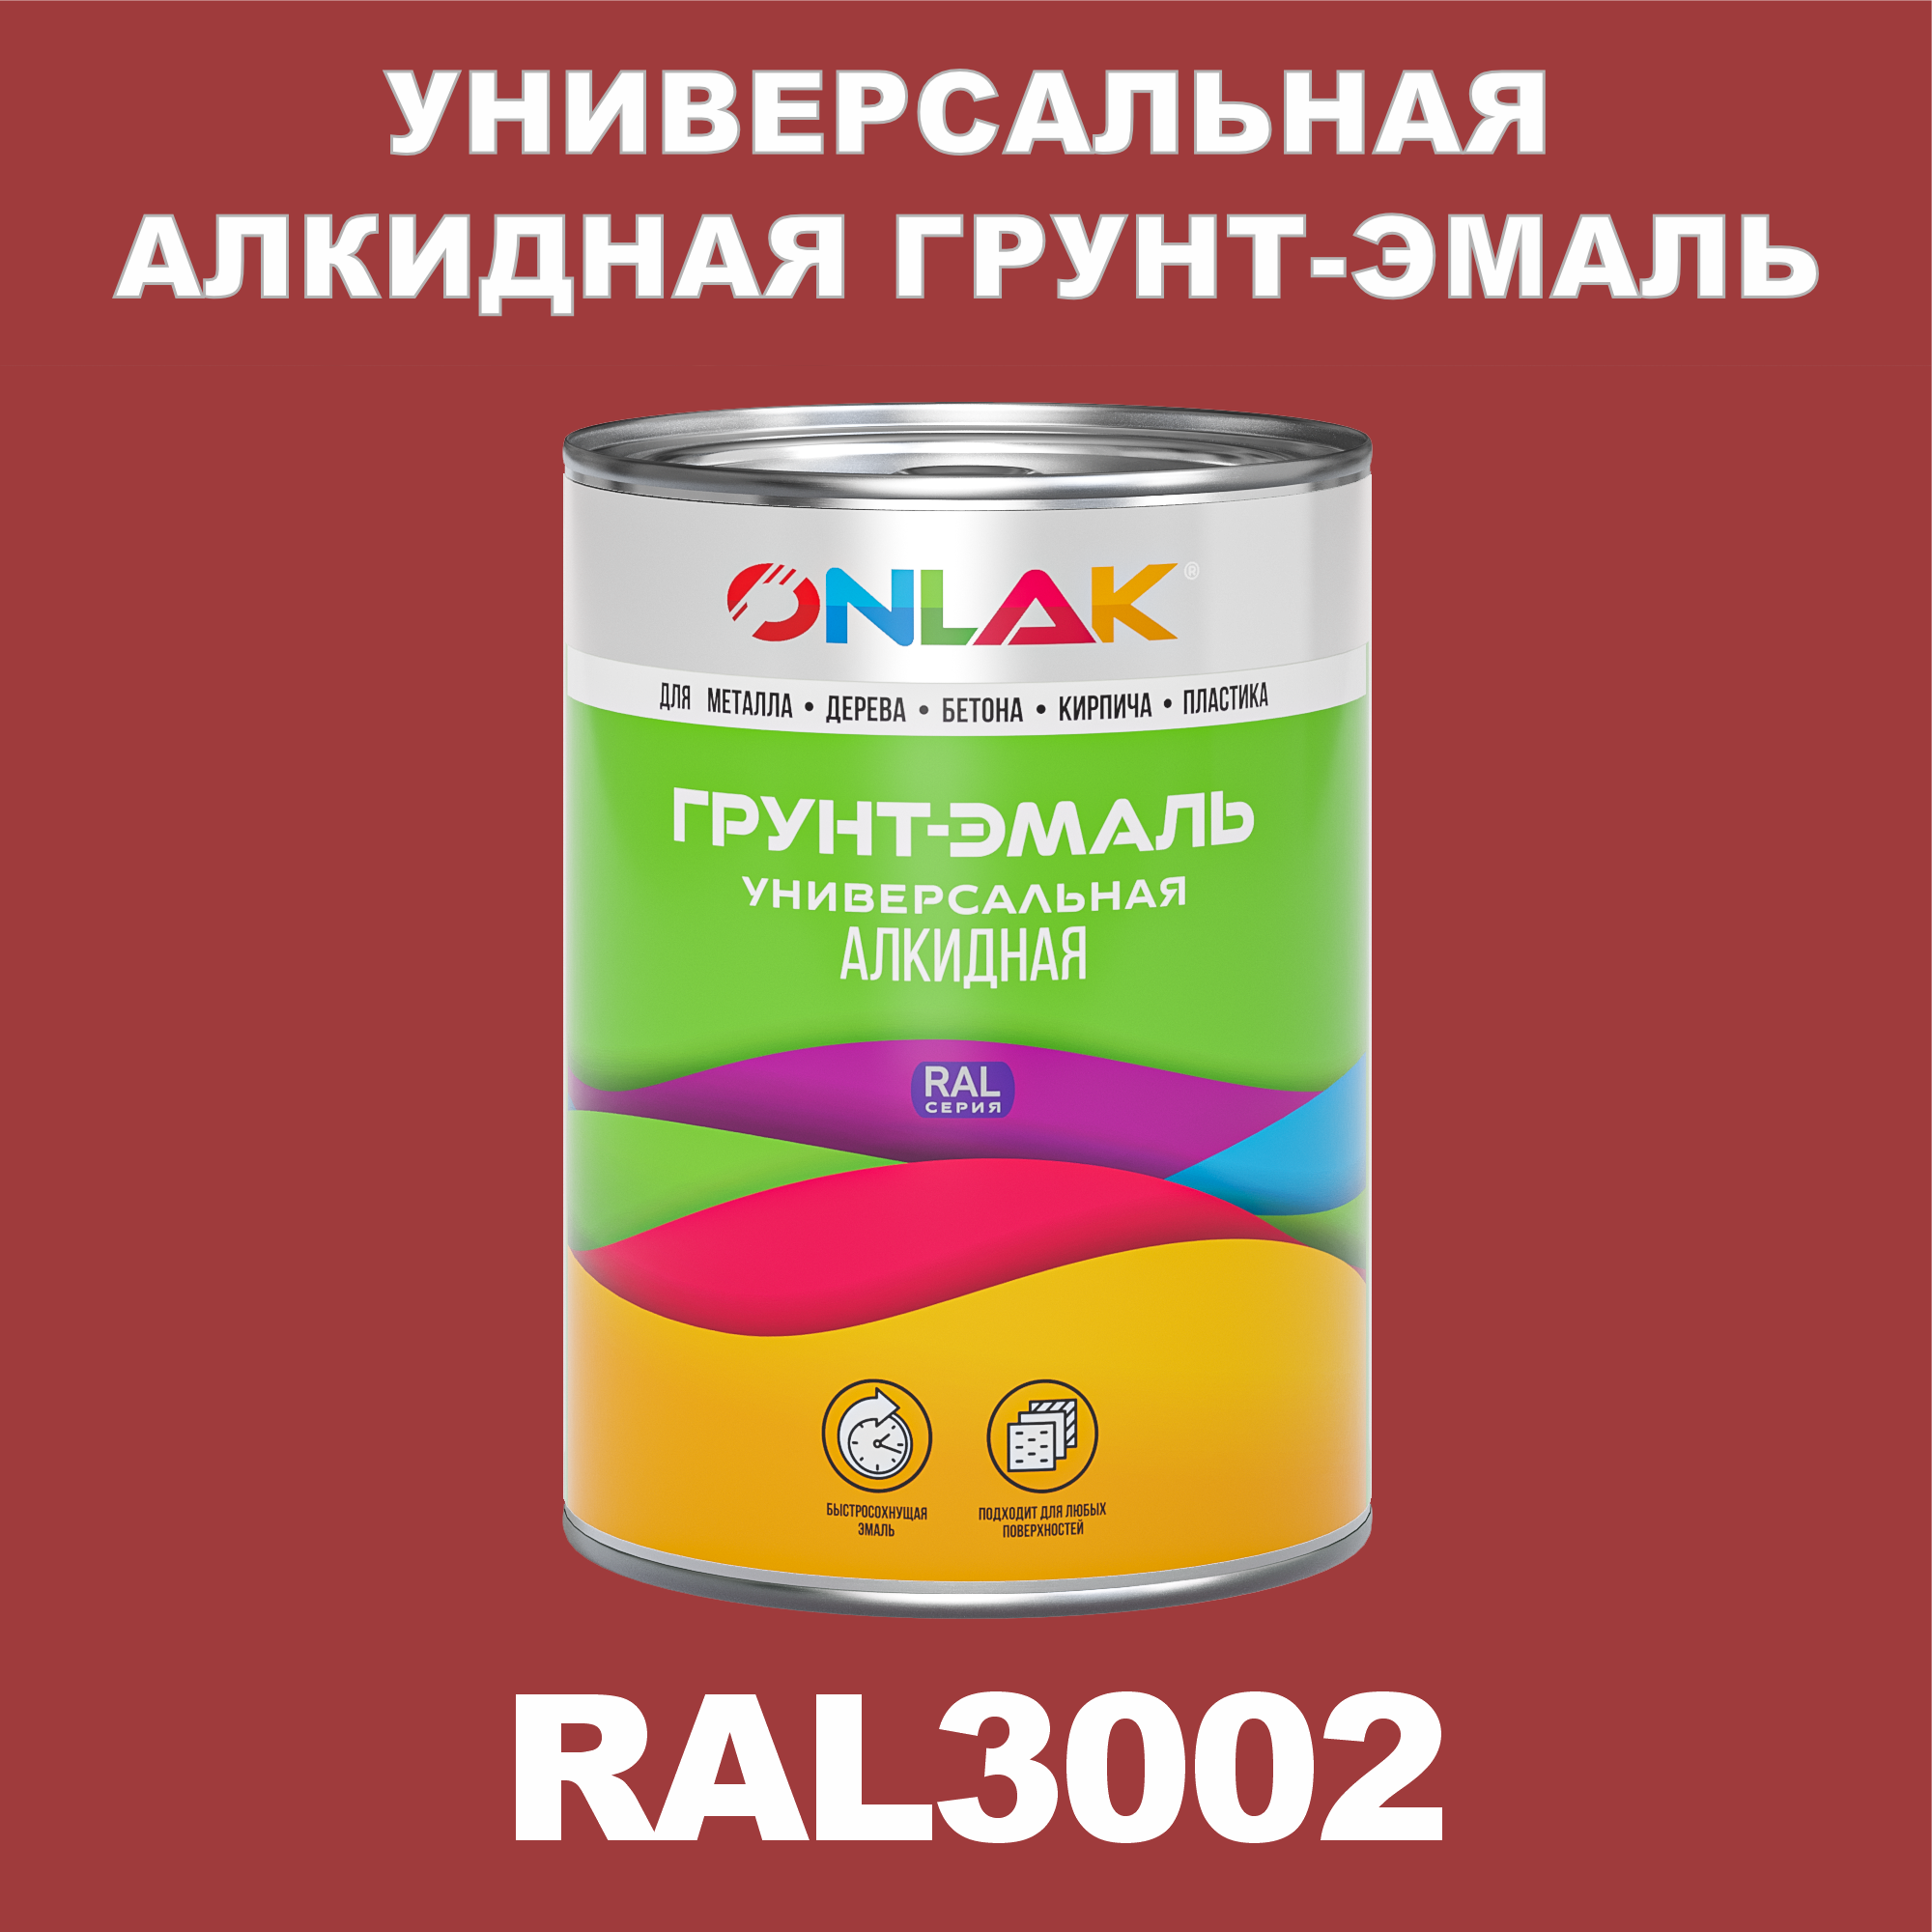 Грунт-эмаль ONLAK 1К RAL3002 антикоррозионная алкидная по металлу по ржавчине 1 кг грунт эмаль neomid по ржавчине быстросохнущая алкидная серая 0 9 кг